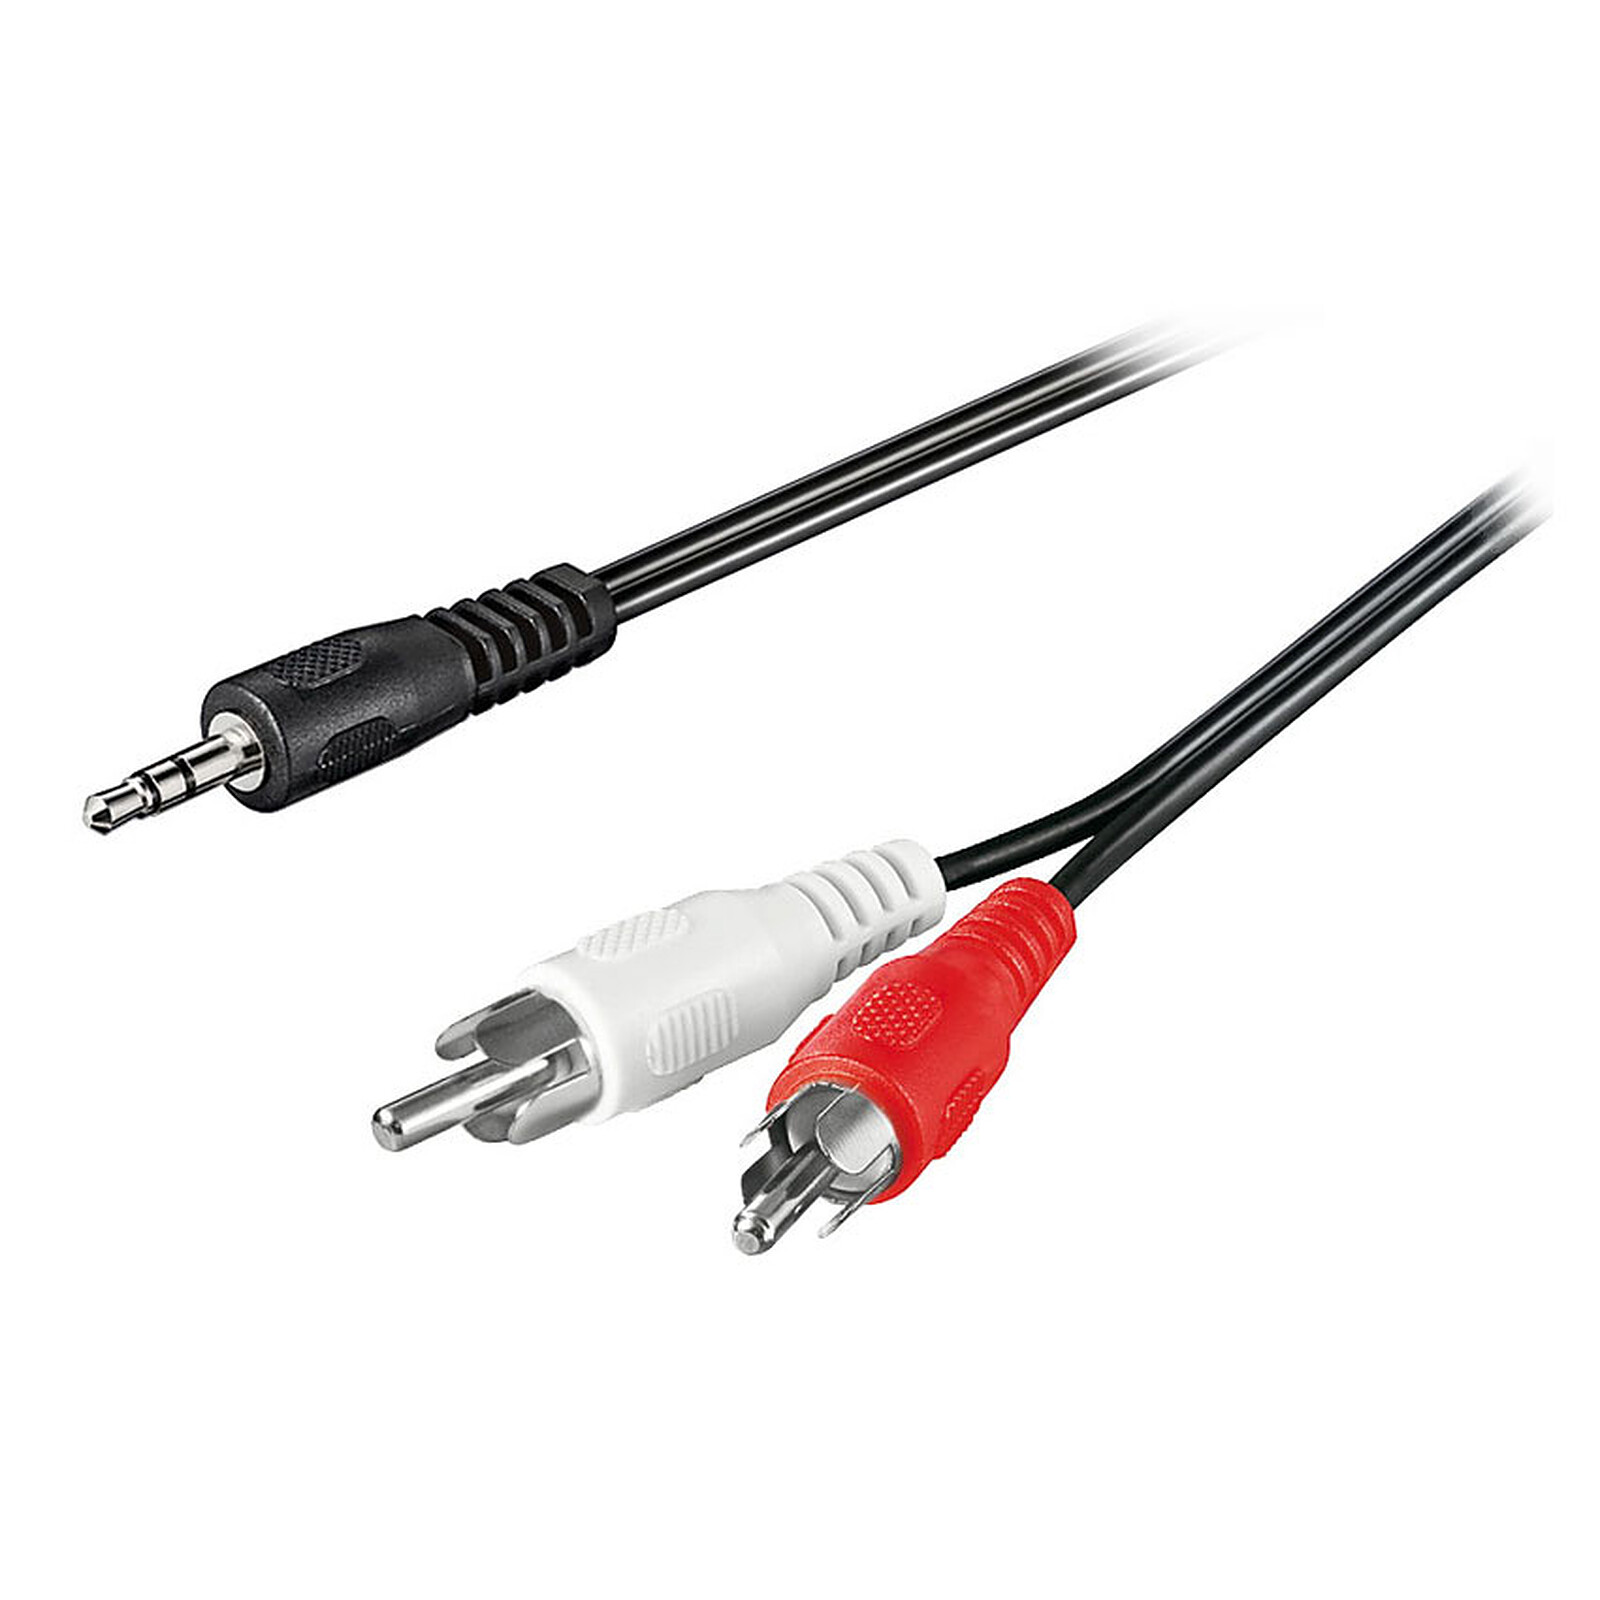 recursos humanos Gallina Autorizar Cable de audio Jack 3,5 mm / 2x RCA machos - 20 m - Adaptador audio  Genérica en LDLC | ¡Musericordia!